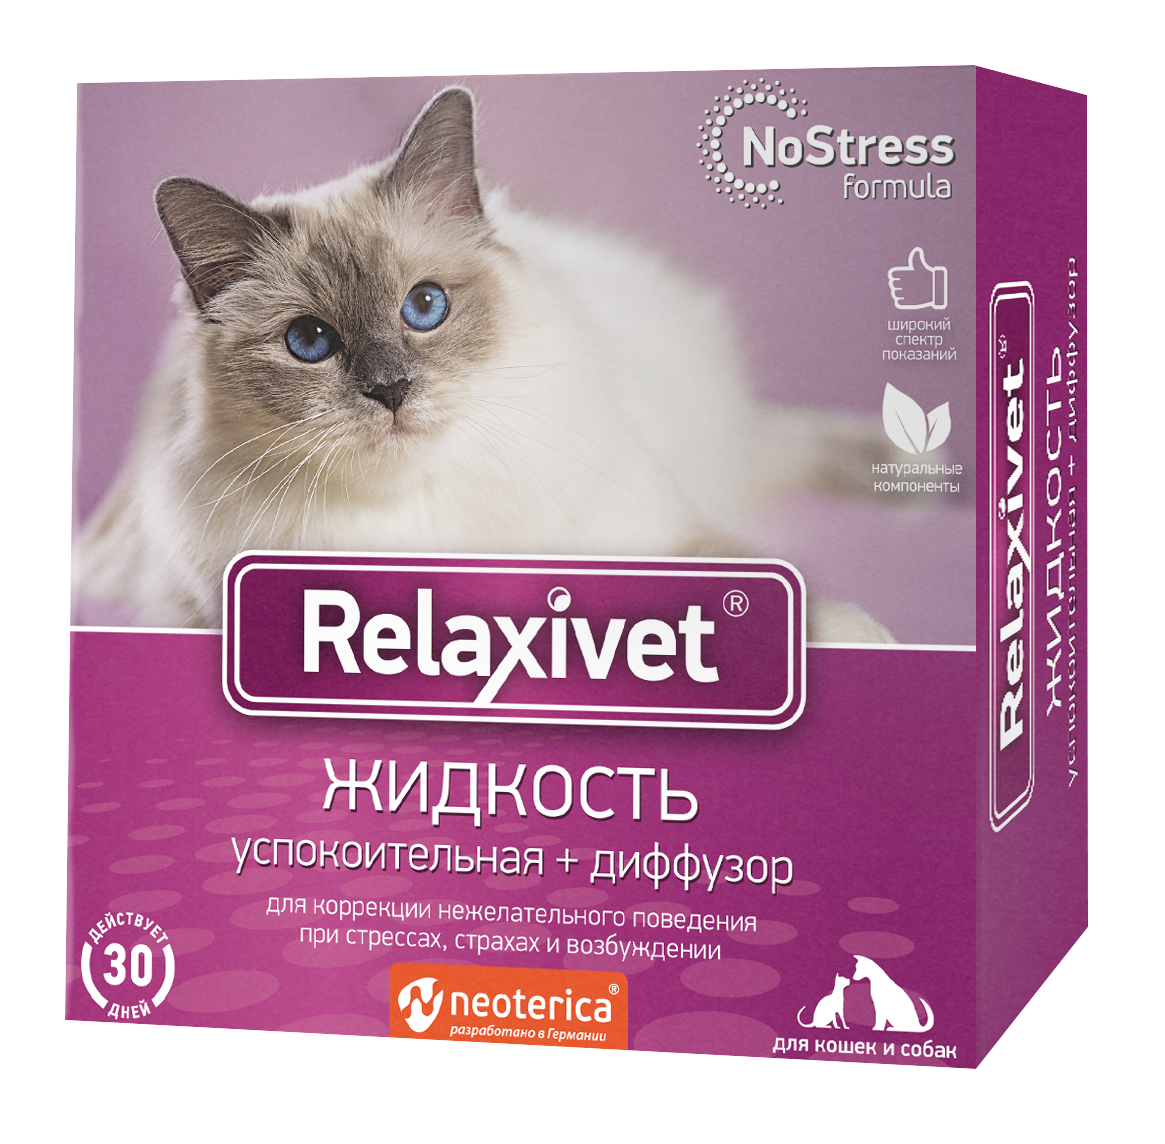 Relaxivet жидкость успокоительная для кошек и собак 45 мл + диффузор